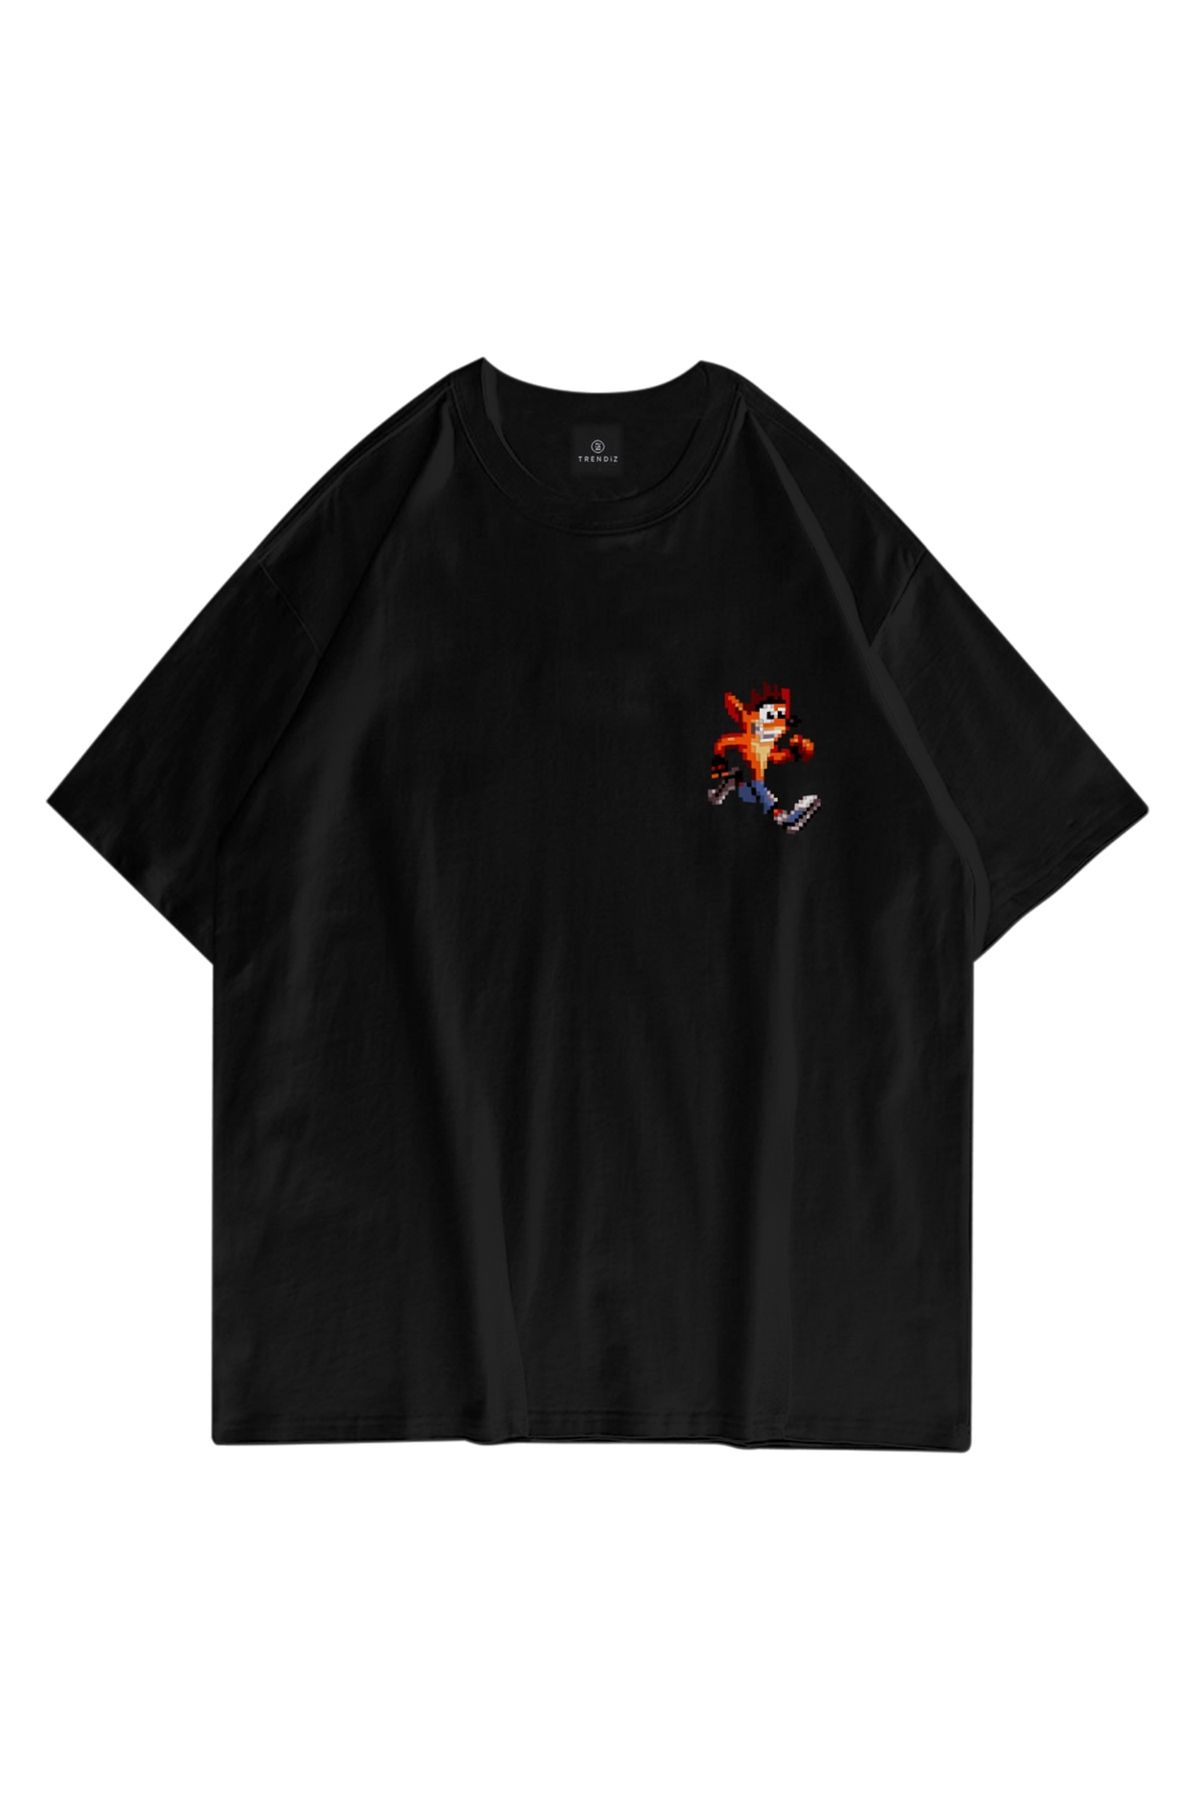 Trendiz Unisex Crash Bandicoot Siyah Tshirt